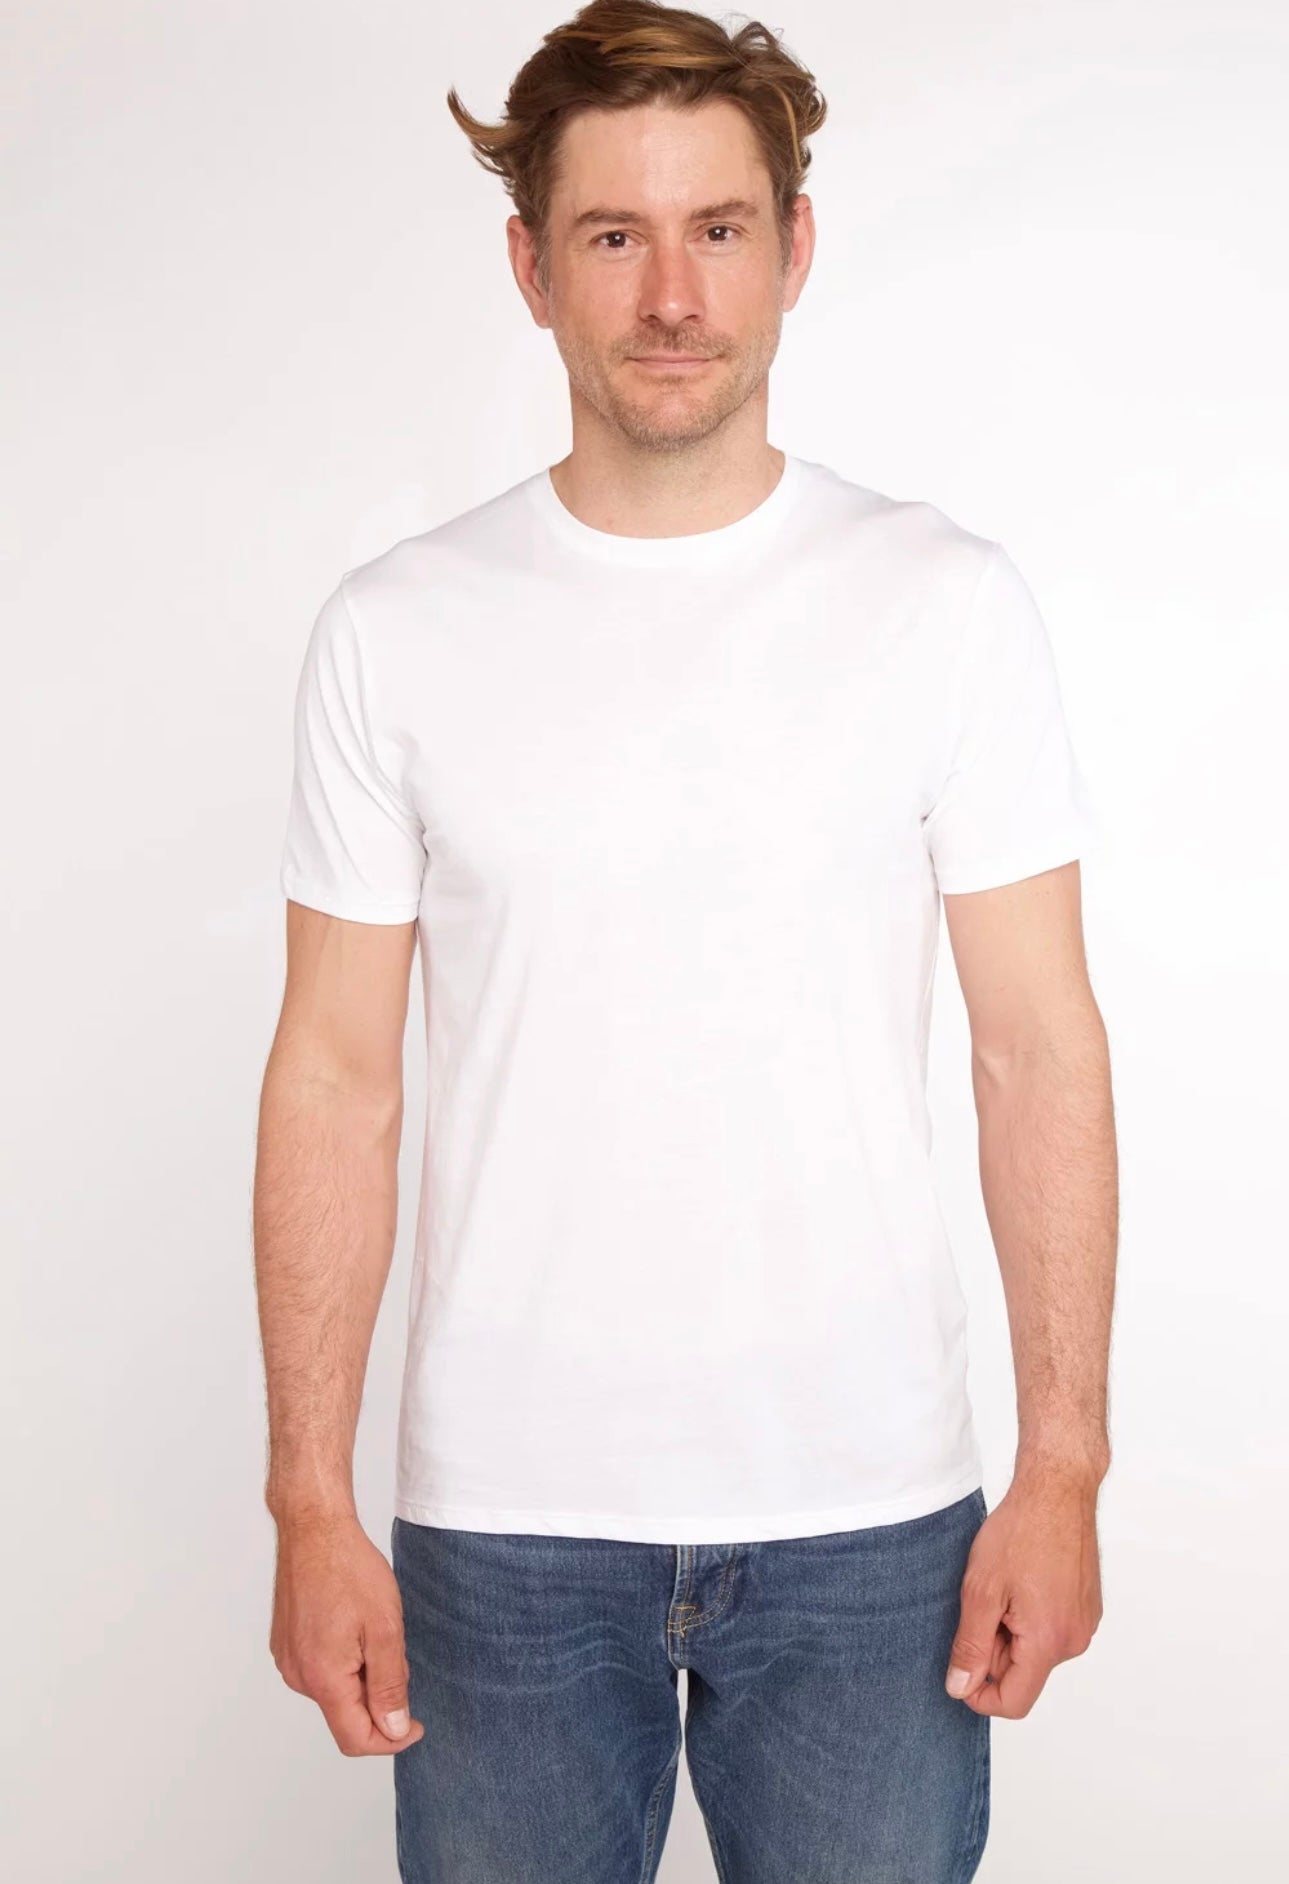 Anonym - T-shirt Jules 100% Cotone PIMA Peruviano White